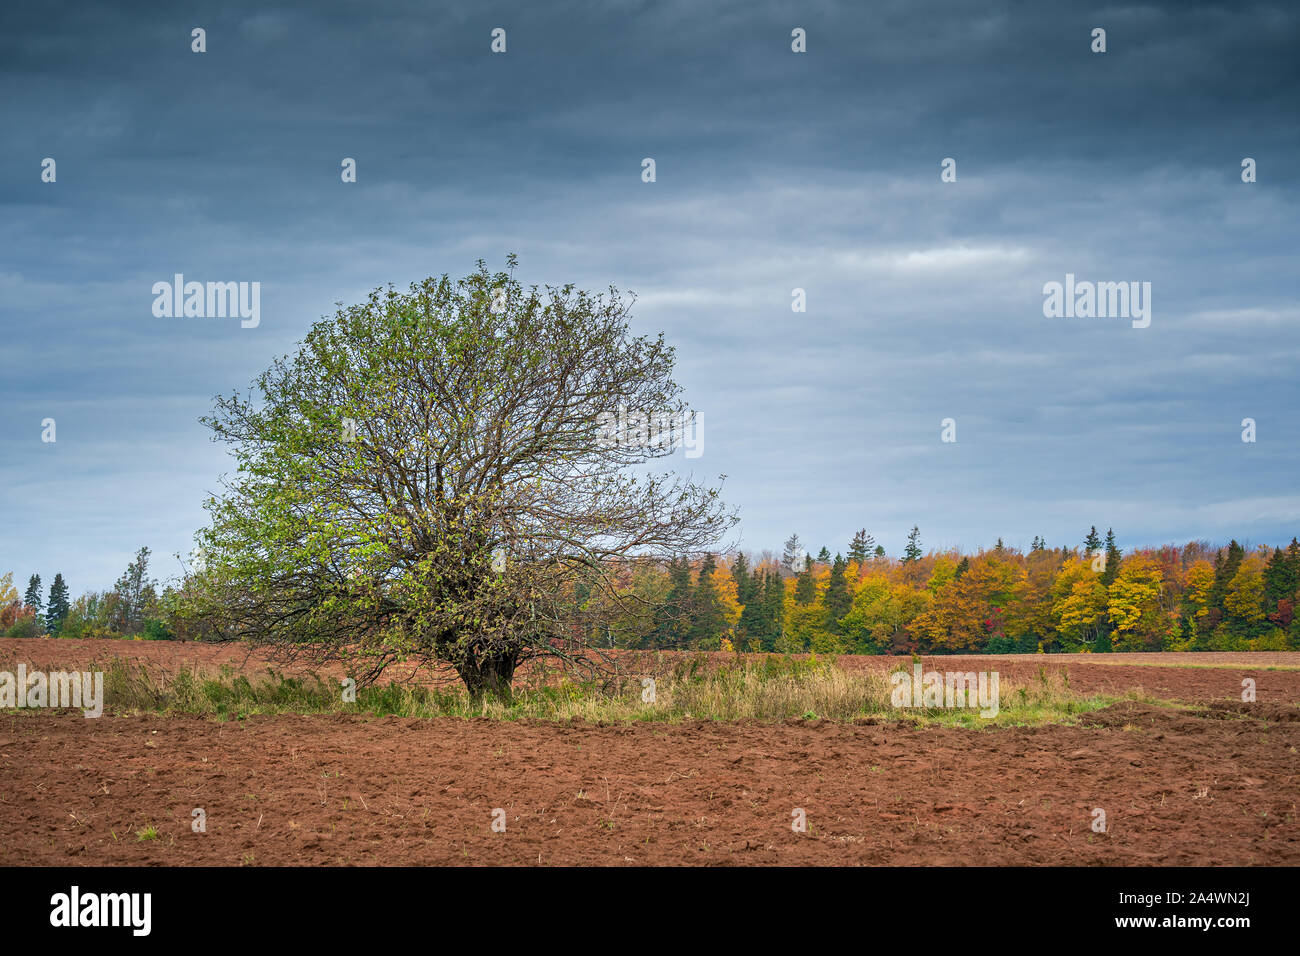 Old Apple Tree dans un champ labouré avec un des arbres de feuilles en automne. Banque D'Images